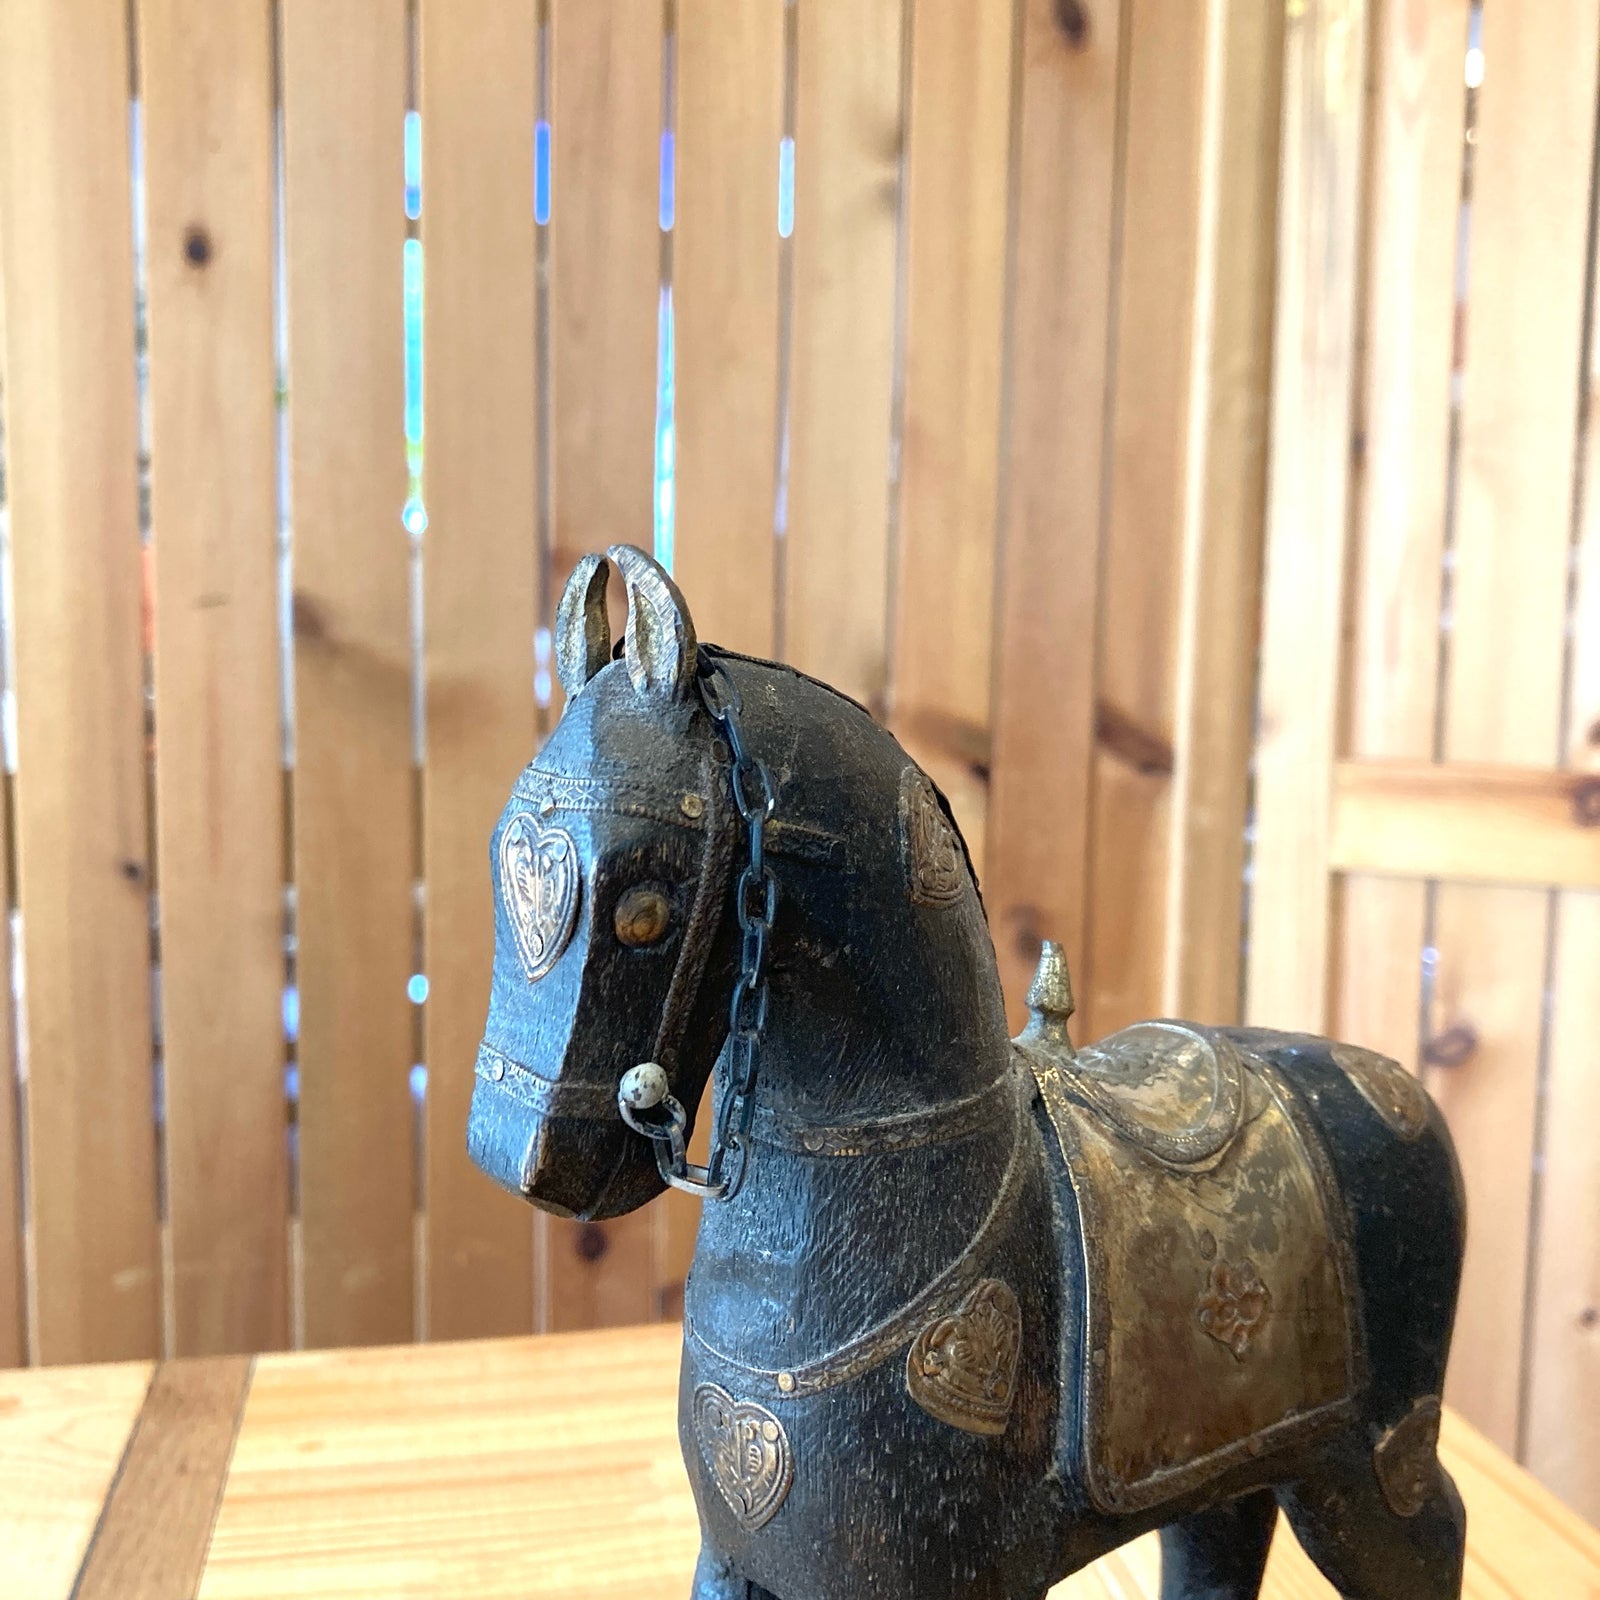 馬のオブジェ ヴィンテージ インテリア 小物 馬 木製 置物 中古 – RESTYLE